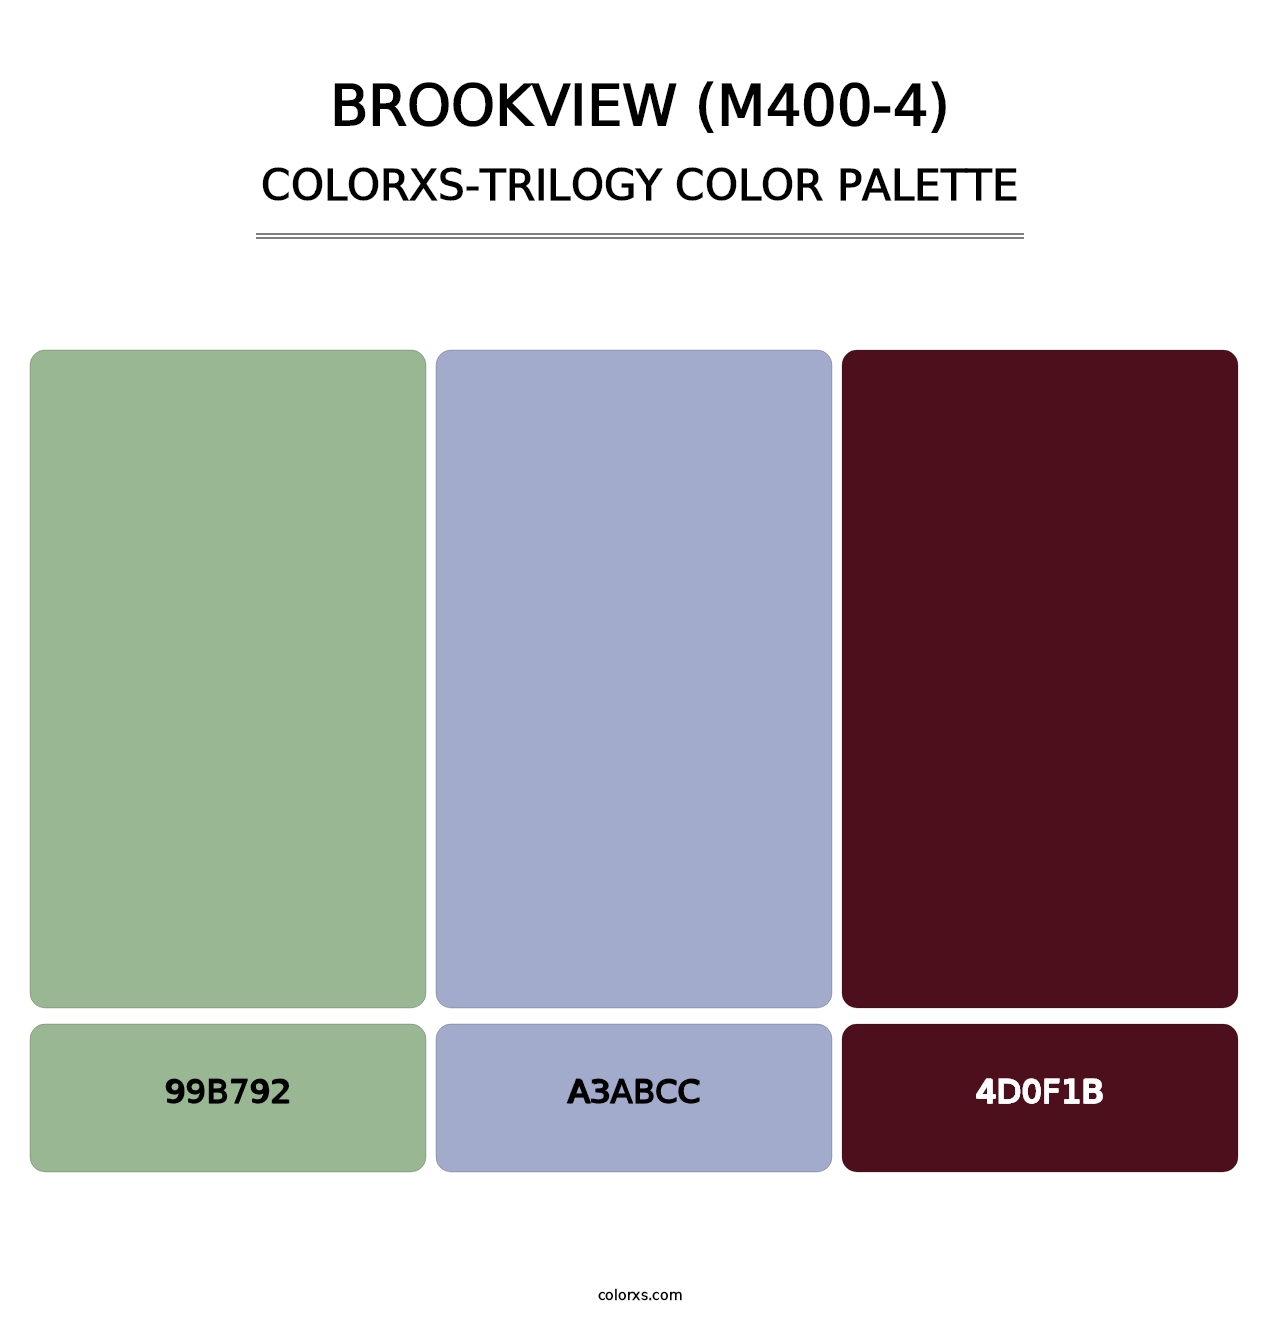 Brookview (M400-4) - Colorxs Trilogy Palette